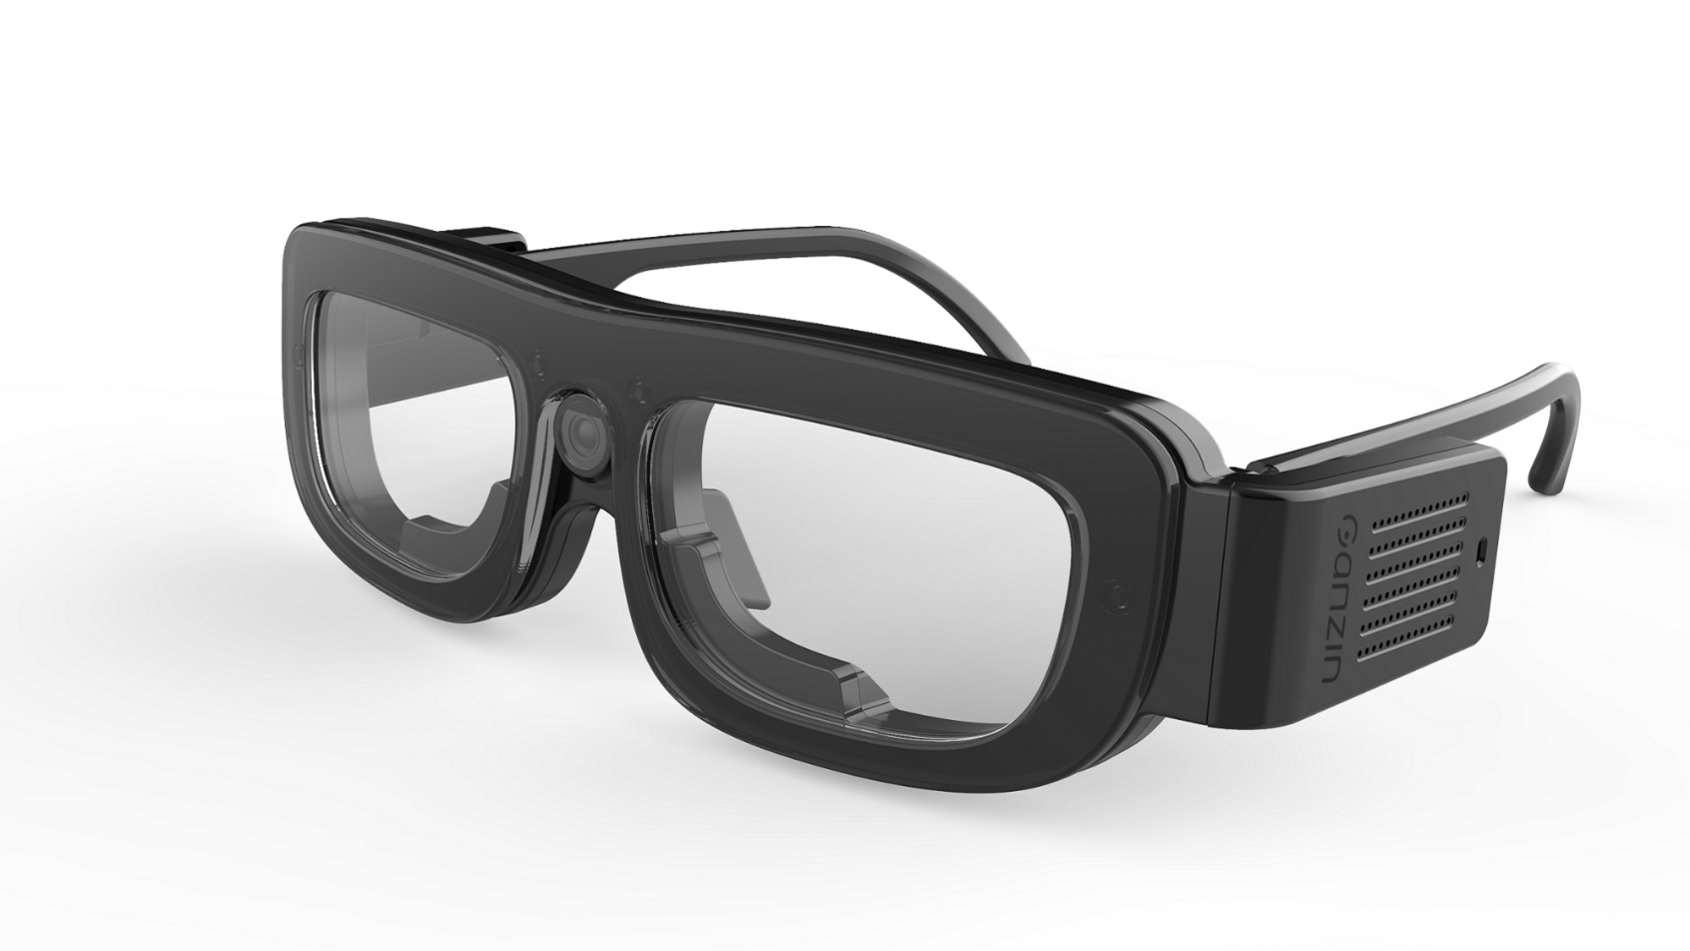 image of Ganzin SOL eye tracker glasses